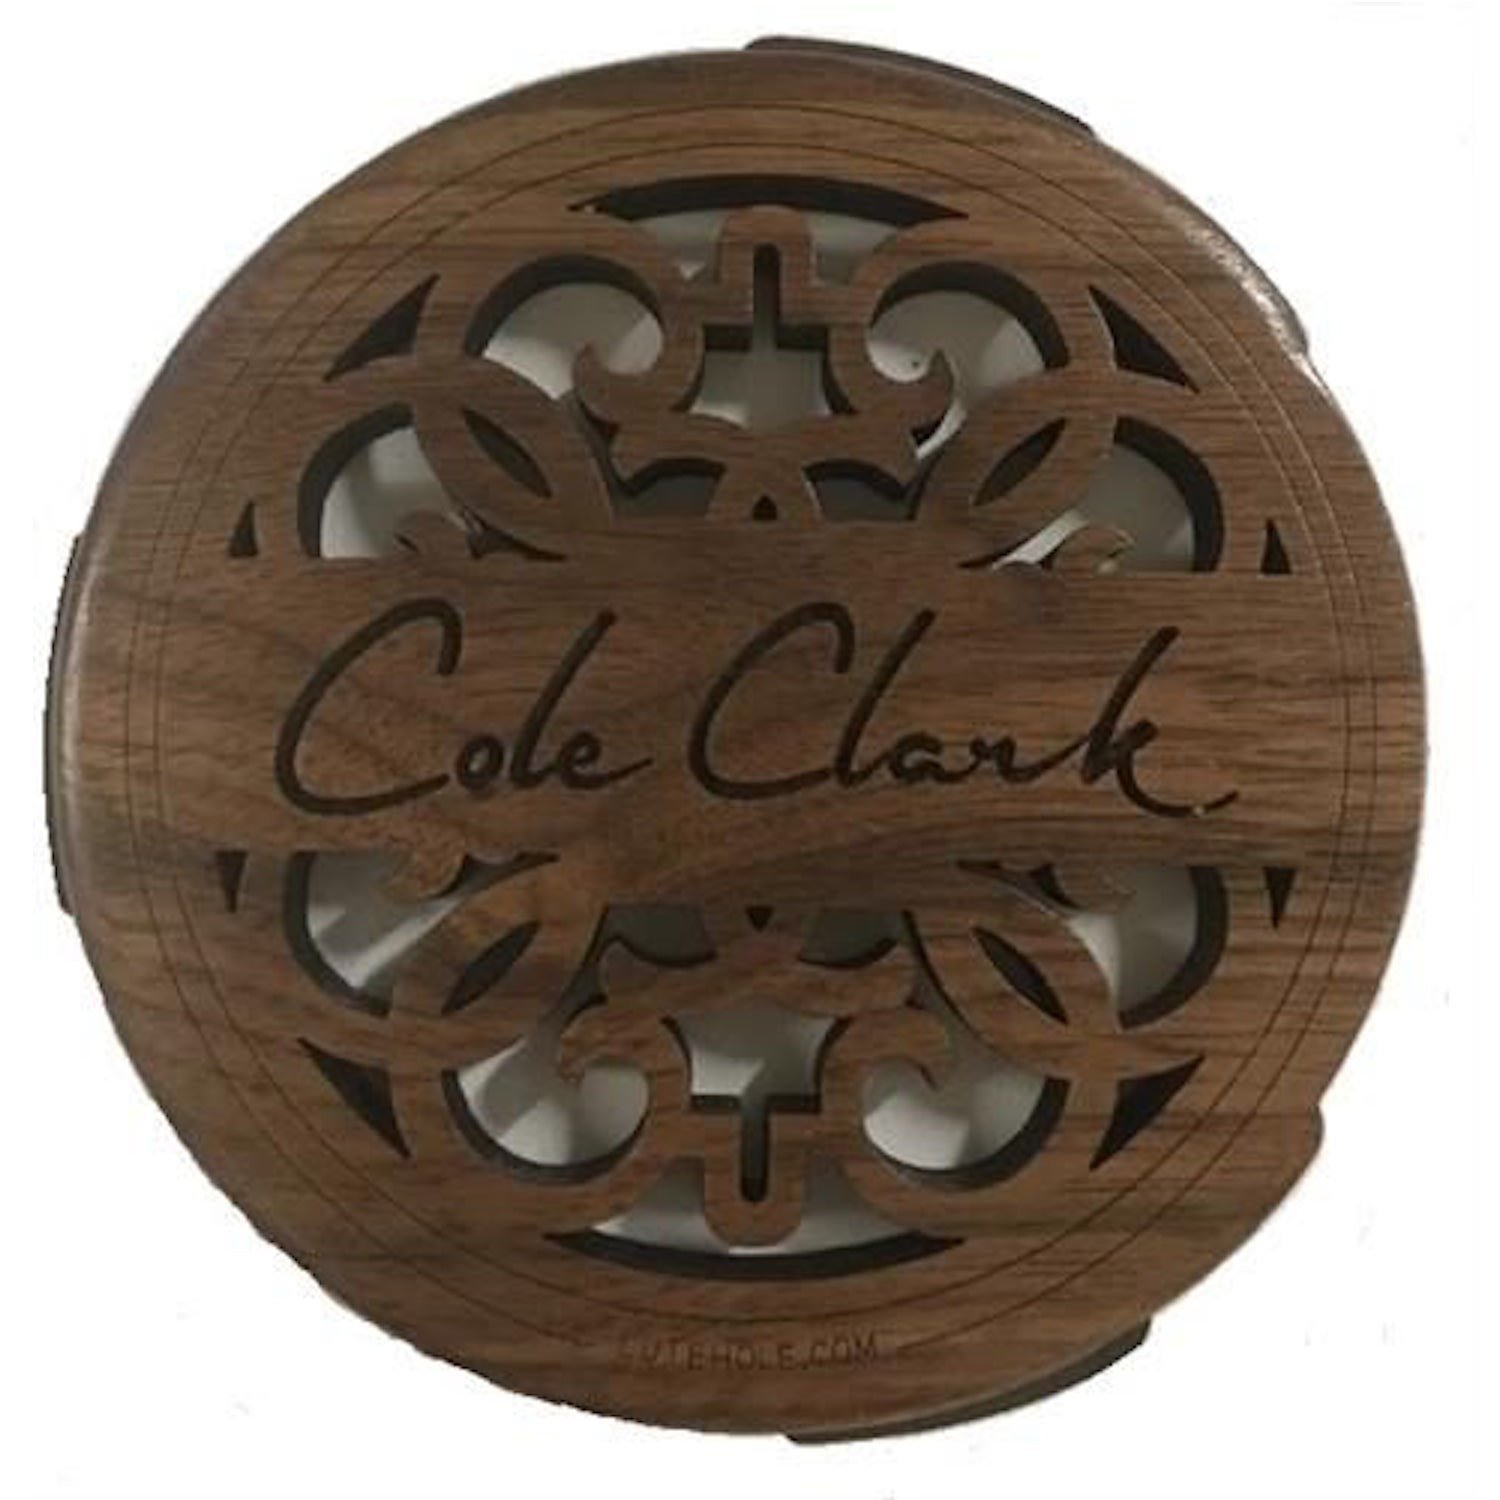 Cole Clark Lutehole Fat Lady 98 Walnut